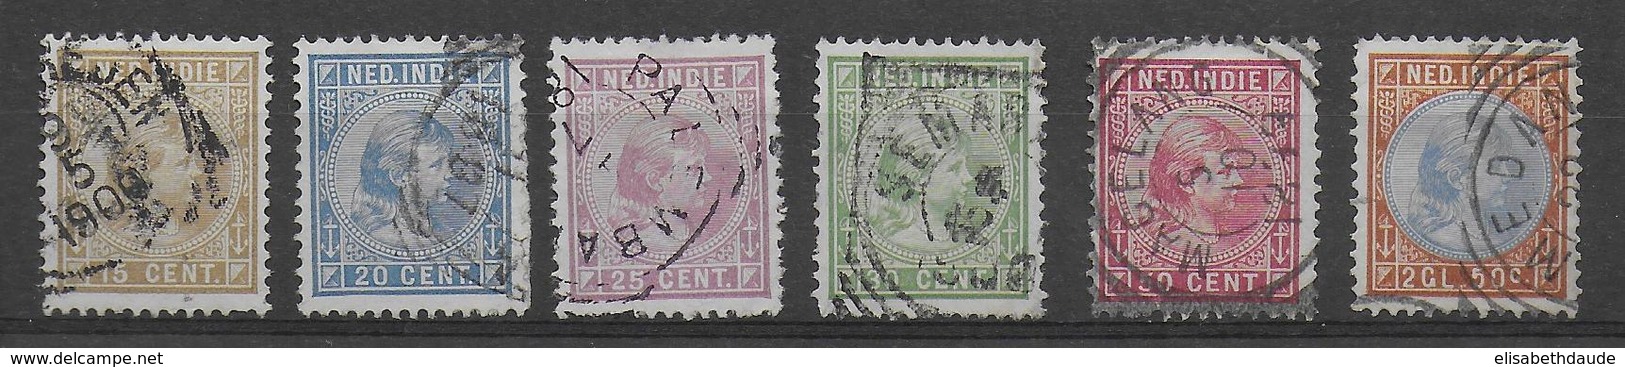 INDES NEERLANDAISES - 1891 - YT N° 25/30 OBLITERES - COTE = 65 EUR - Indes Néerlandaises